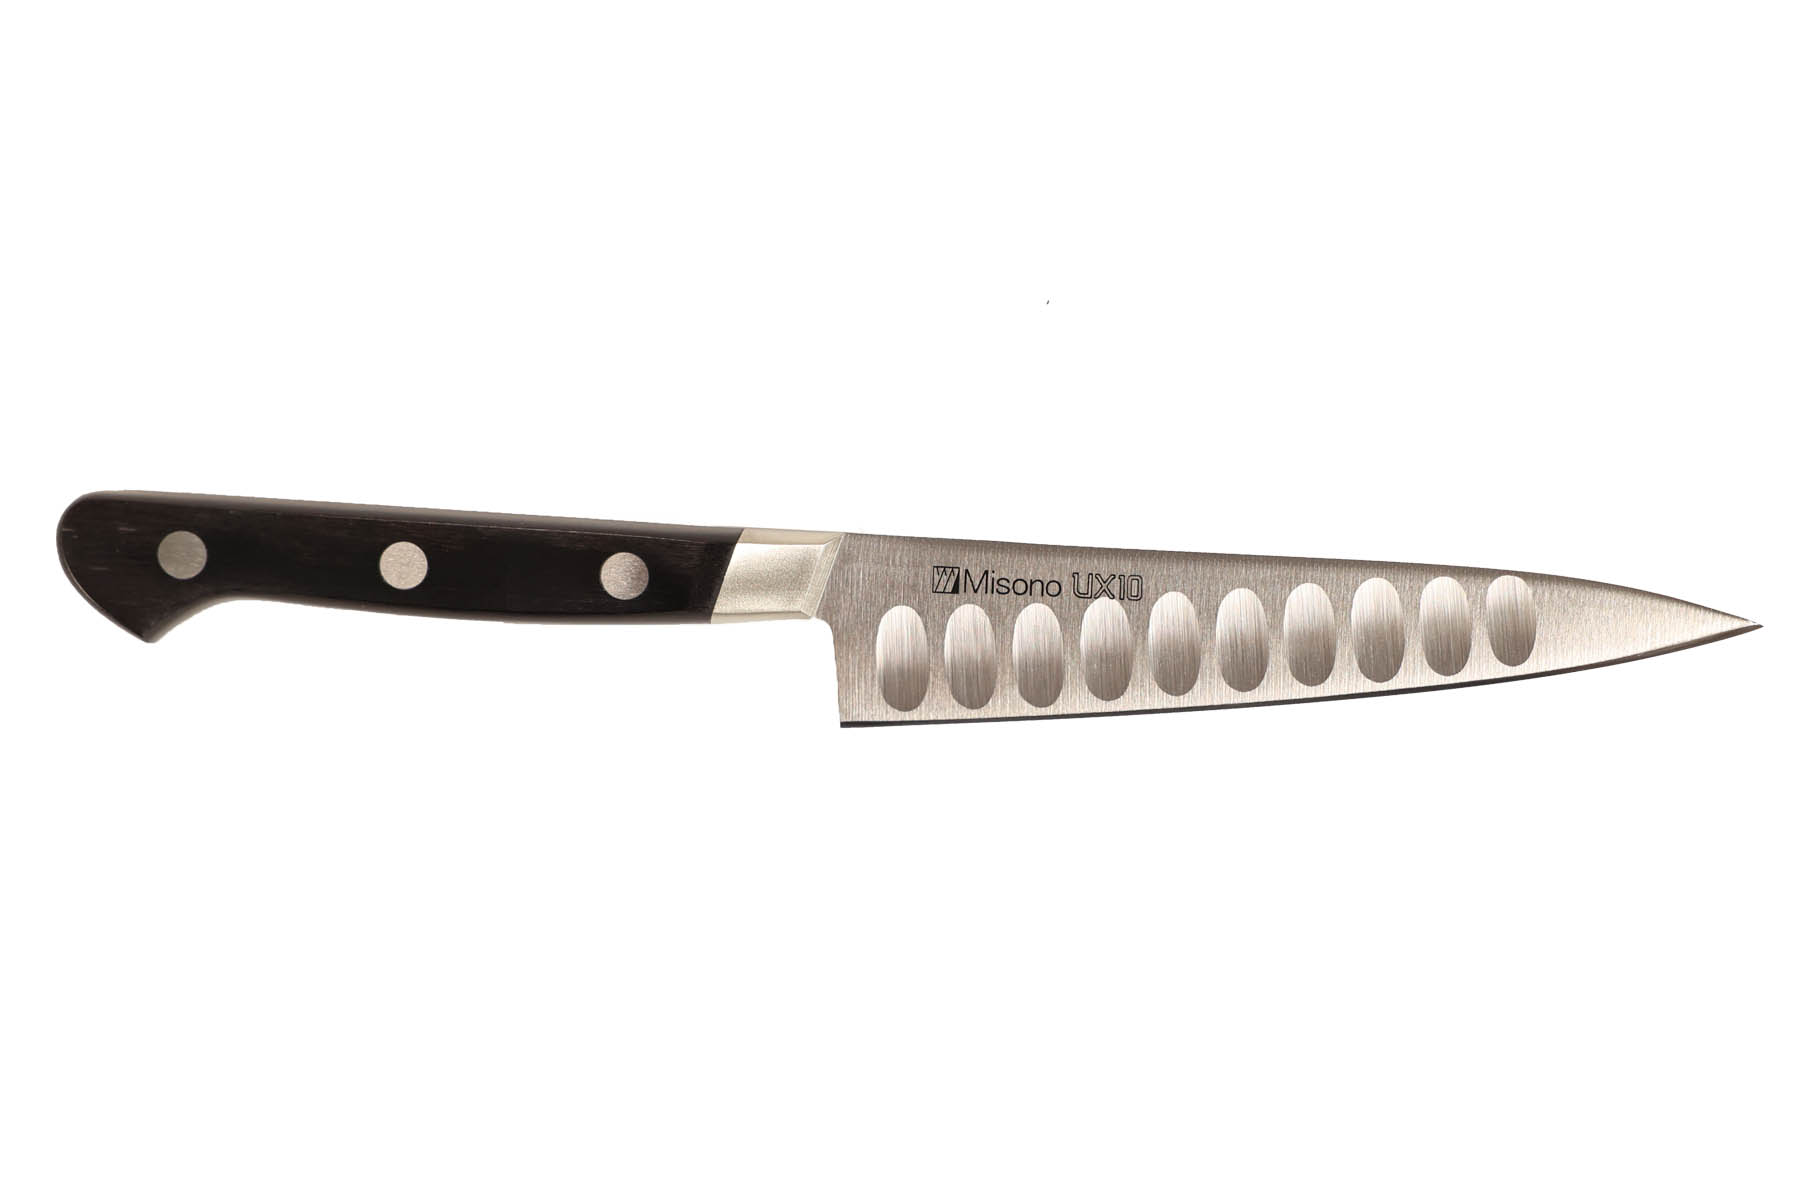 Couteau japonais Misono UX10 - Couteau d'office lame alvéolée 13 cm